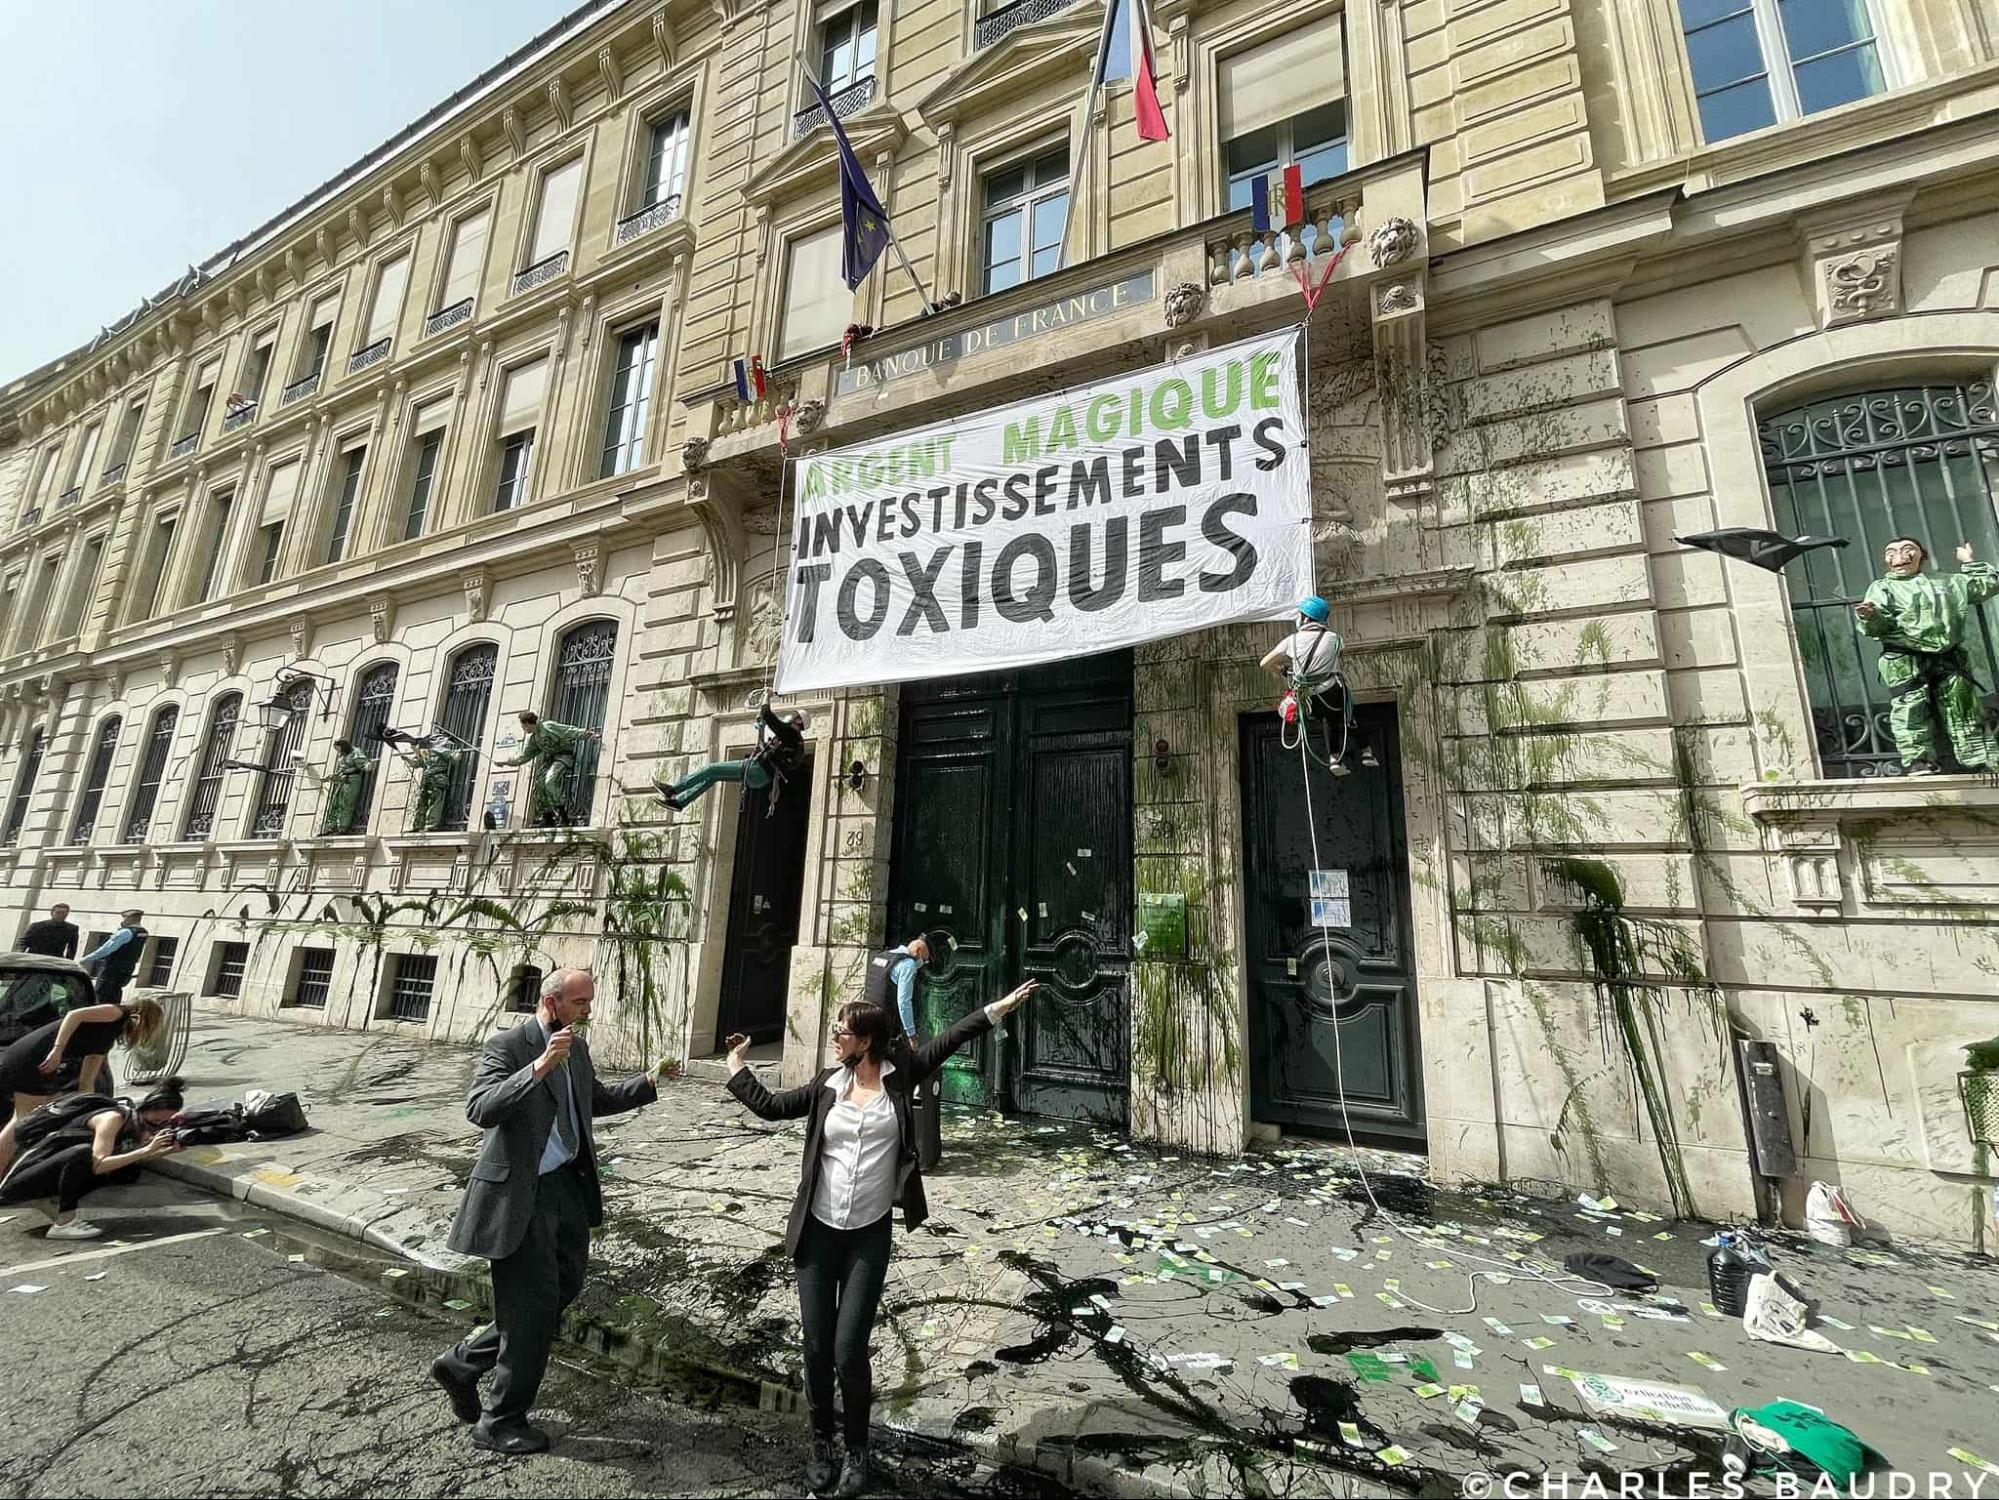 Paris, Frankreich. Die Bank von Frankreich wird passend zu ihrenschmutzigen Ölinvestitionen umgestaltet.